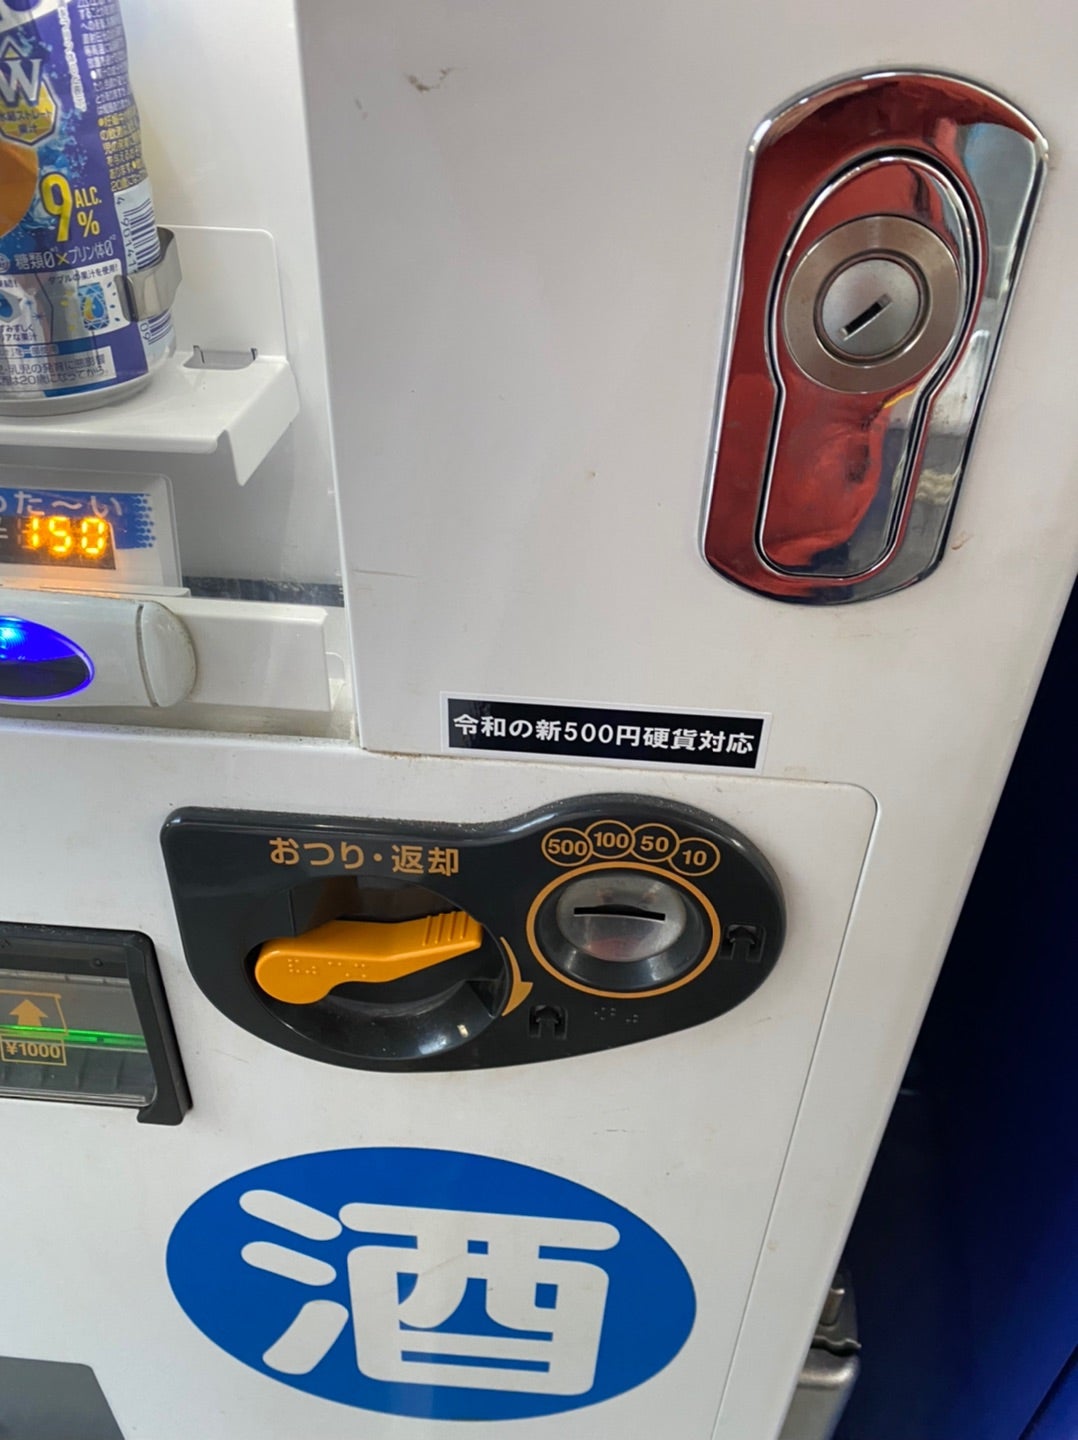 新500円硬貨 自動販売機 対応コインメック | 酒自販機の旅